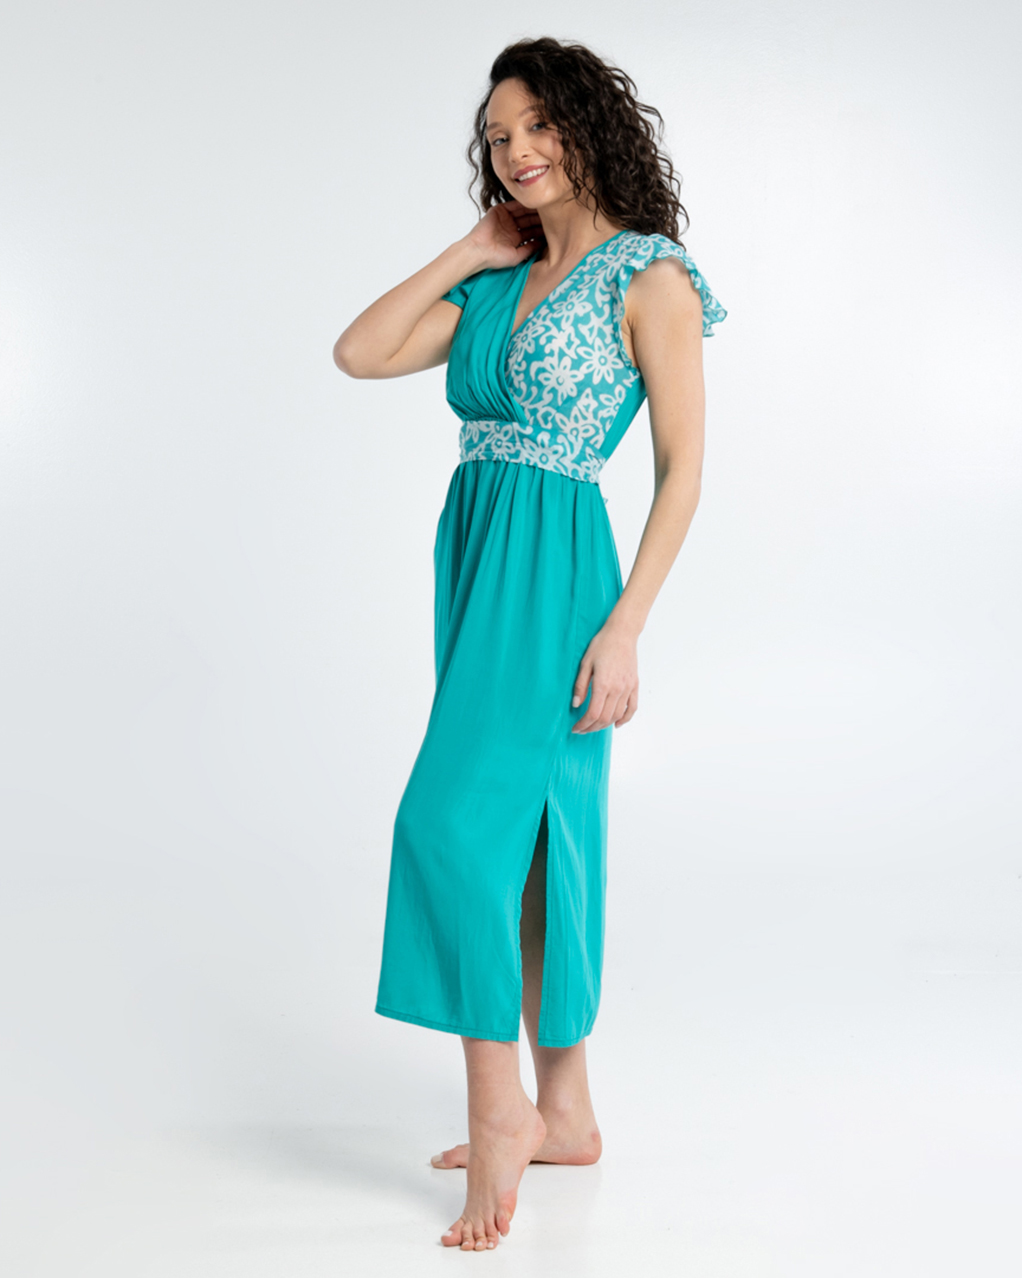 Turquoise flower κρουαζέ φόρεμα